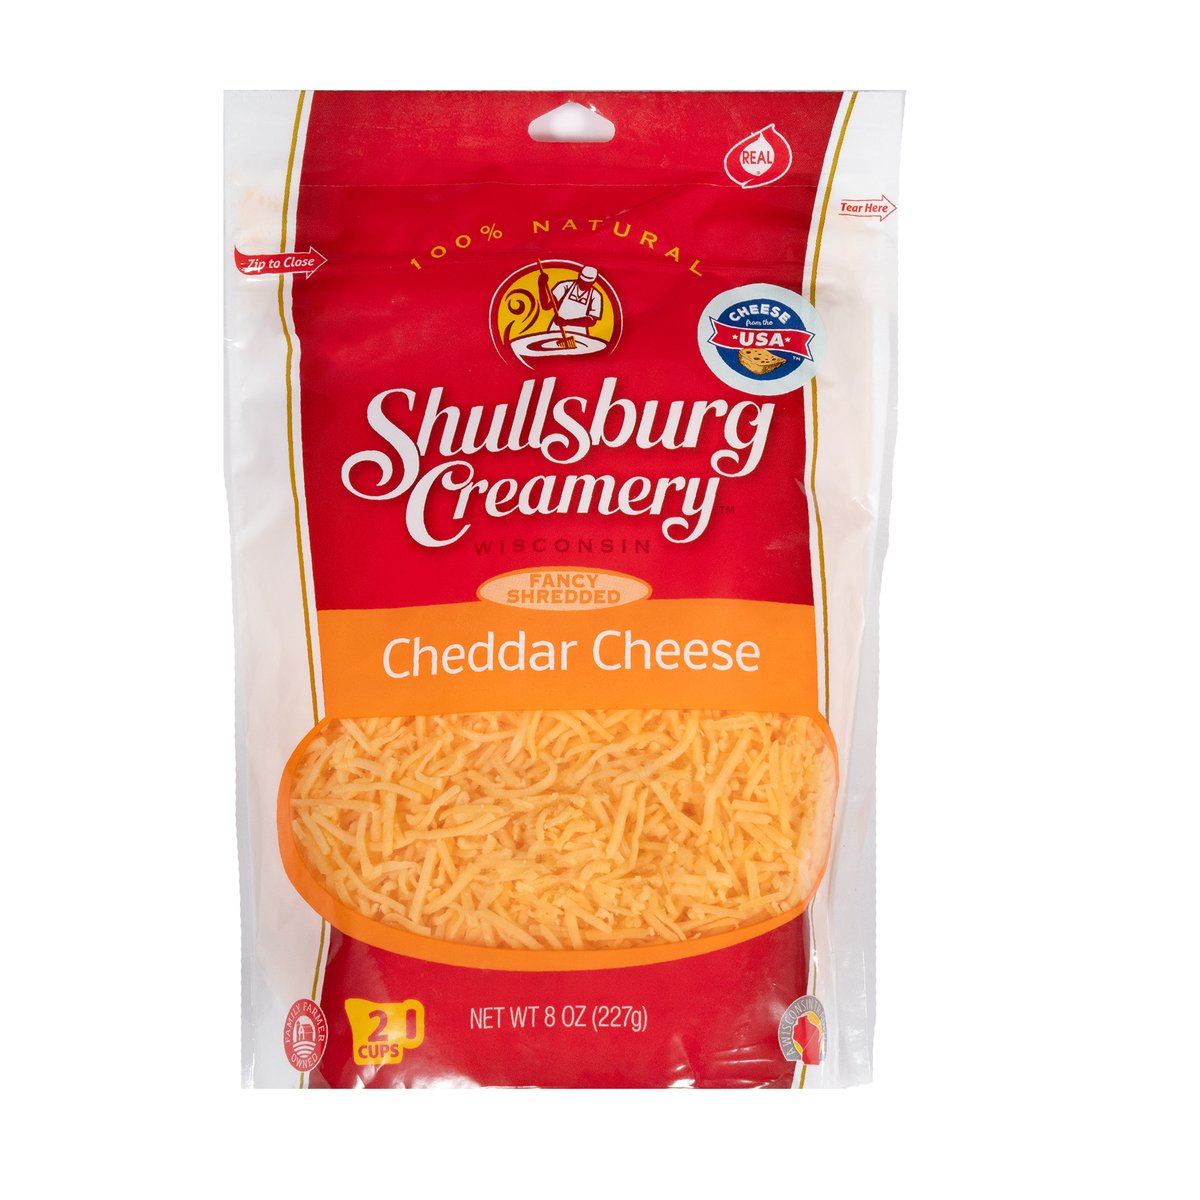 Shullsburg Creamery Fancy Shredded Cheddar Cheese 227 g